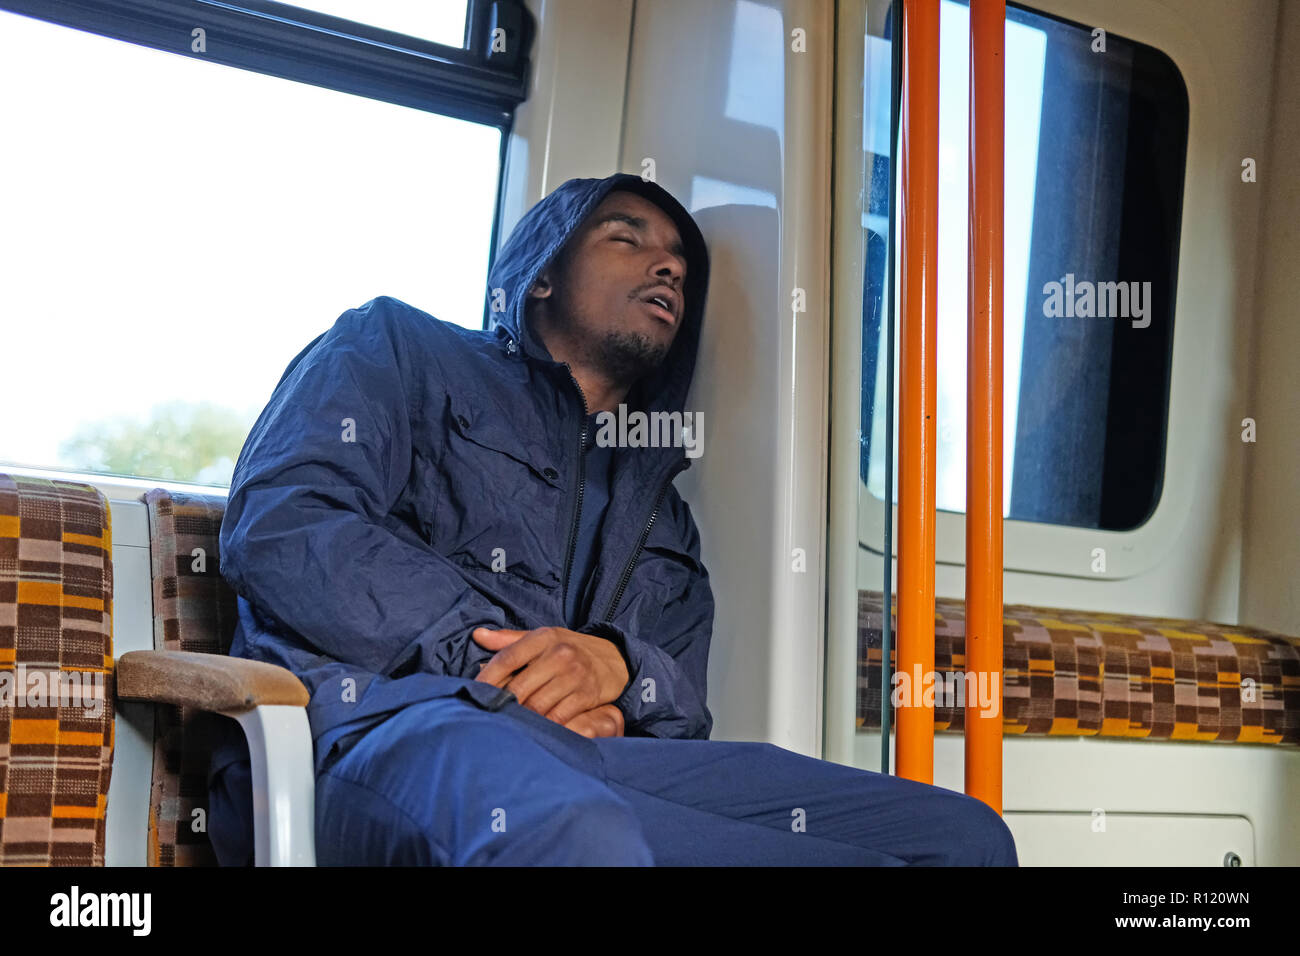 A black man asleep on a tube train Stock Photo